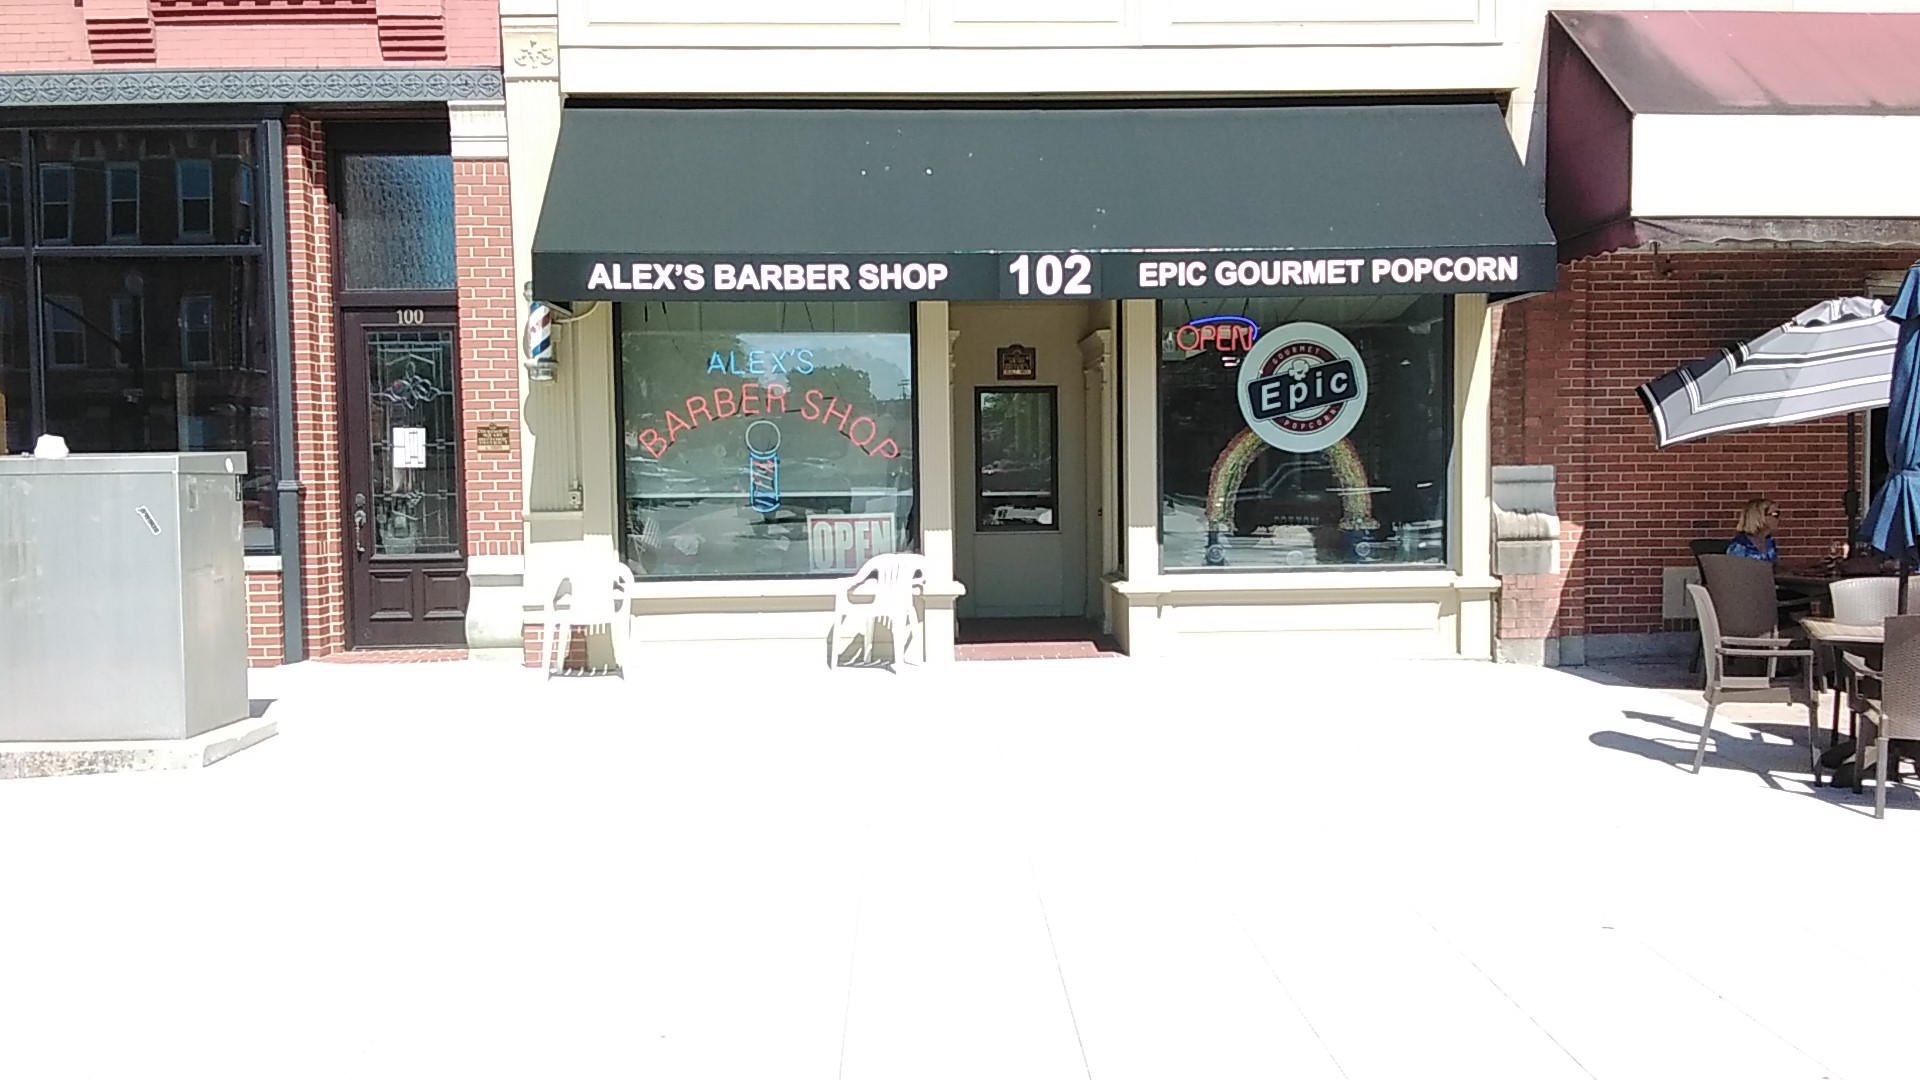 Alex's Barber Shop